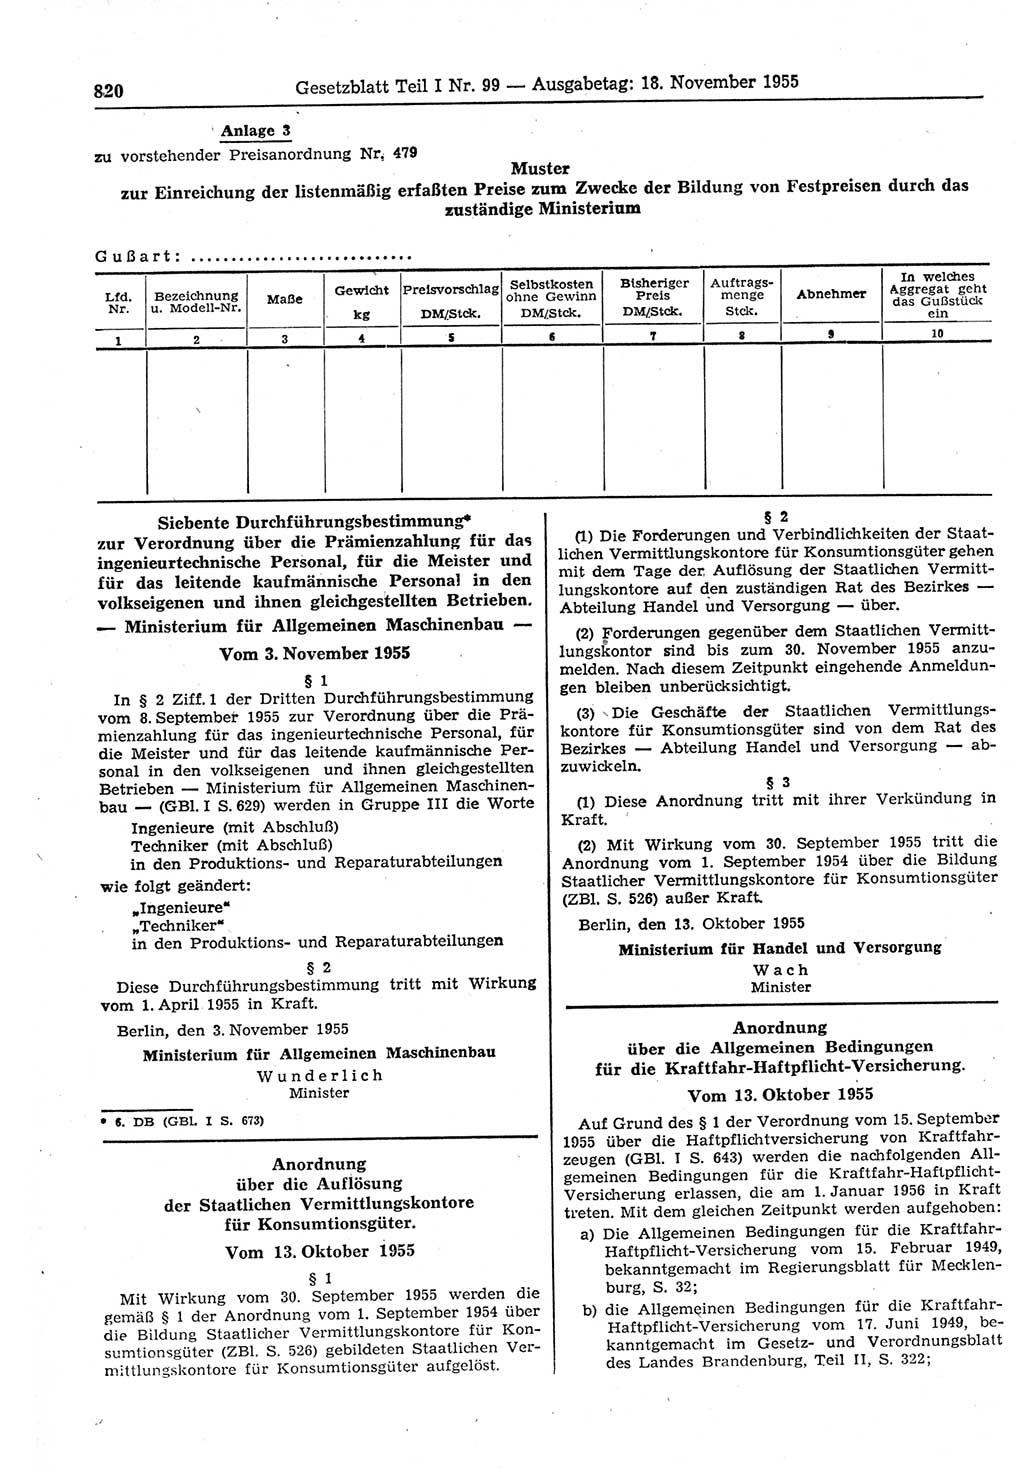 Gesetzblatt (GBl.) der Deutschen Demokratischen Republik (DDR) Teil Ⅰ 1955, Seite 820 (GBl. DDR Ⅰ 1955, S. 820)